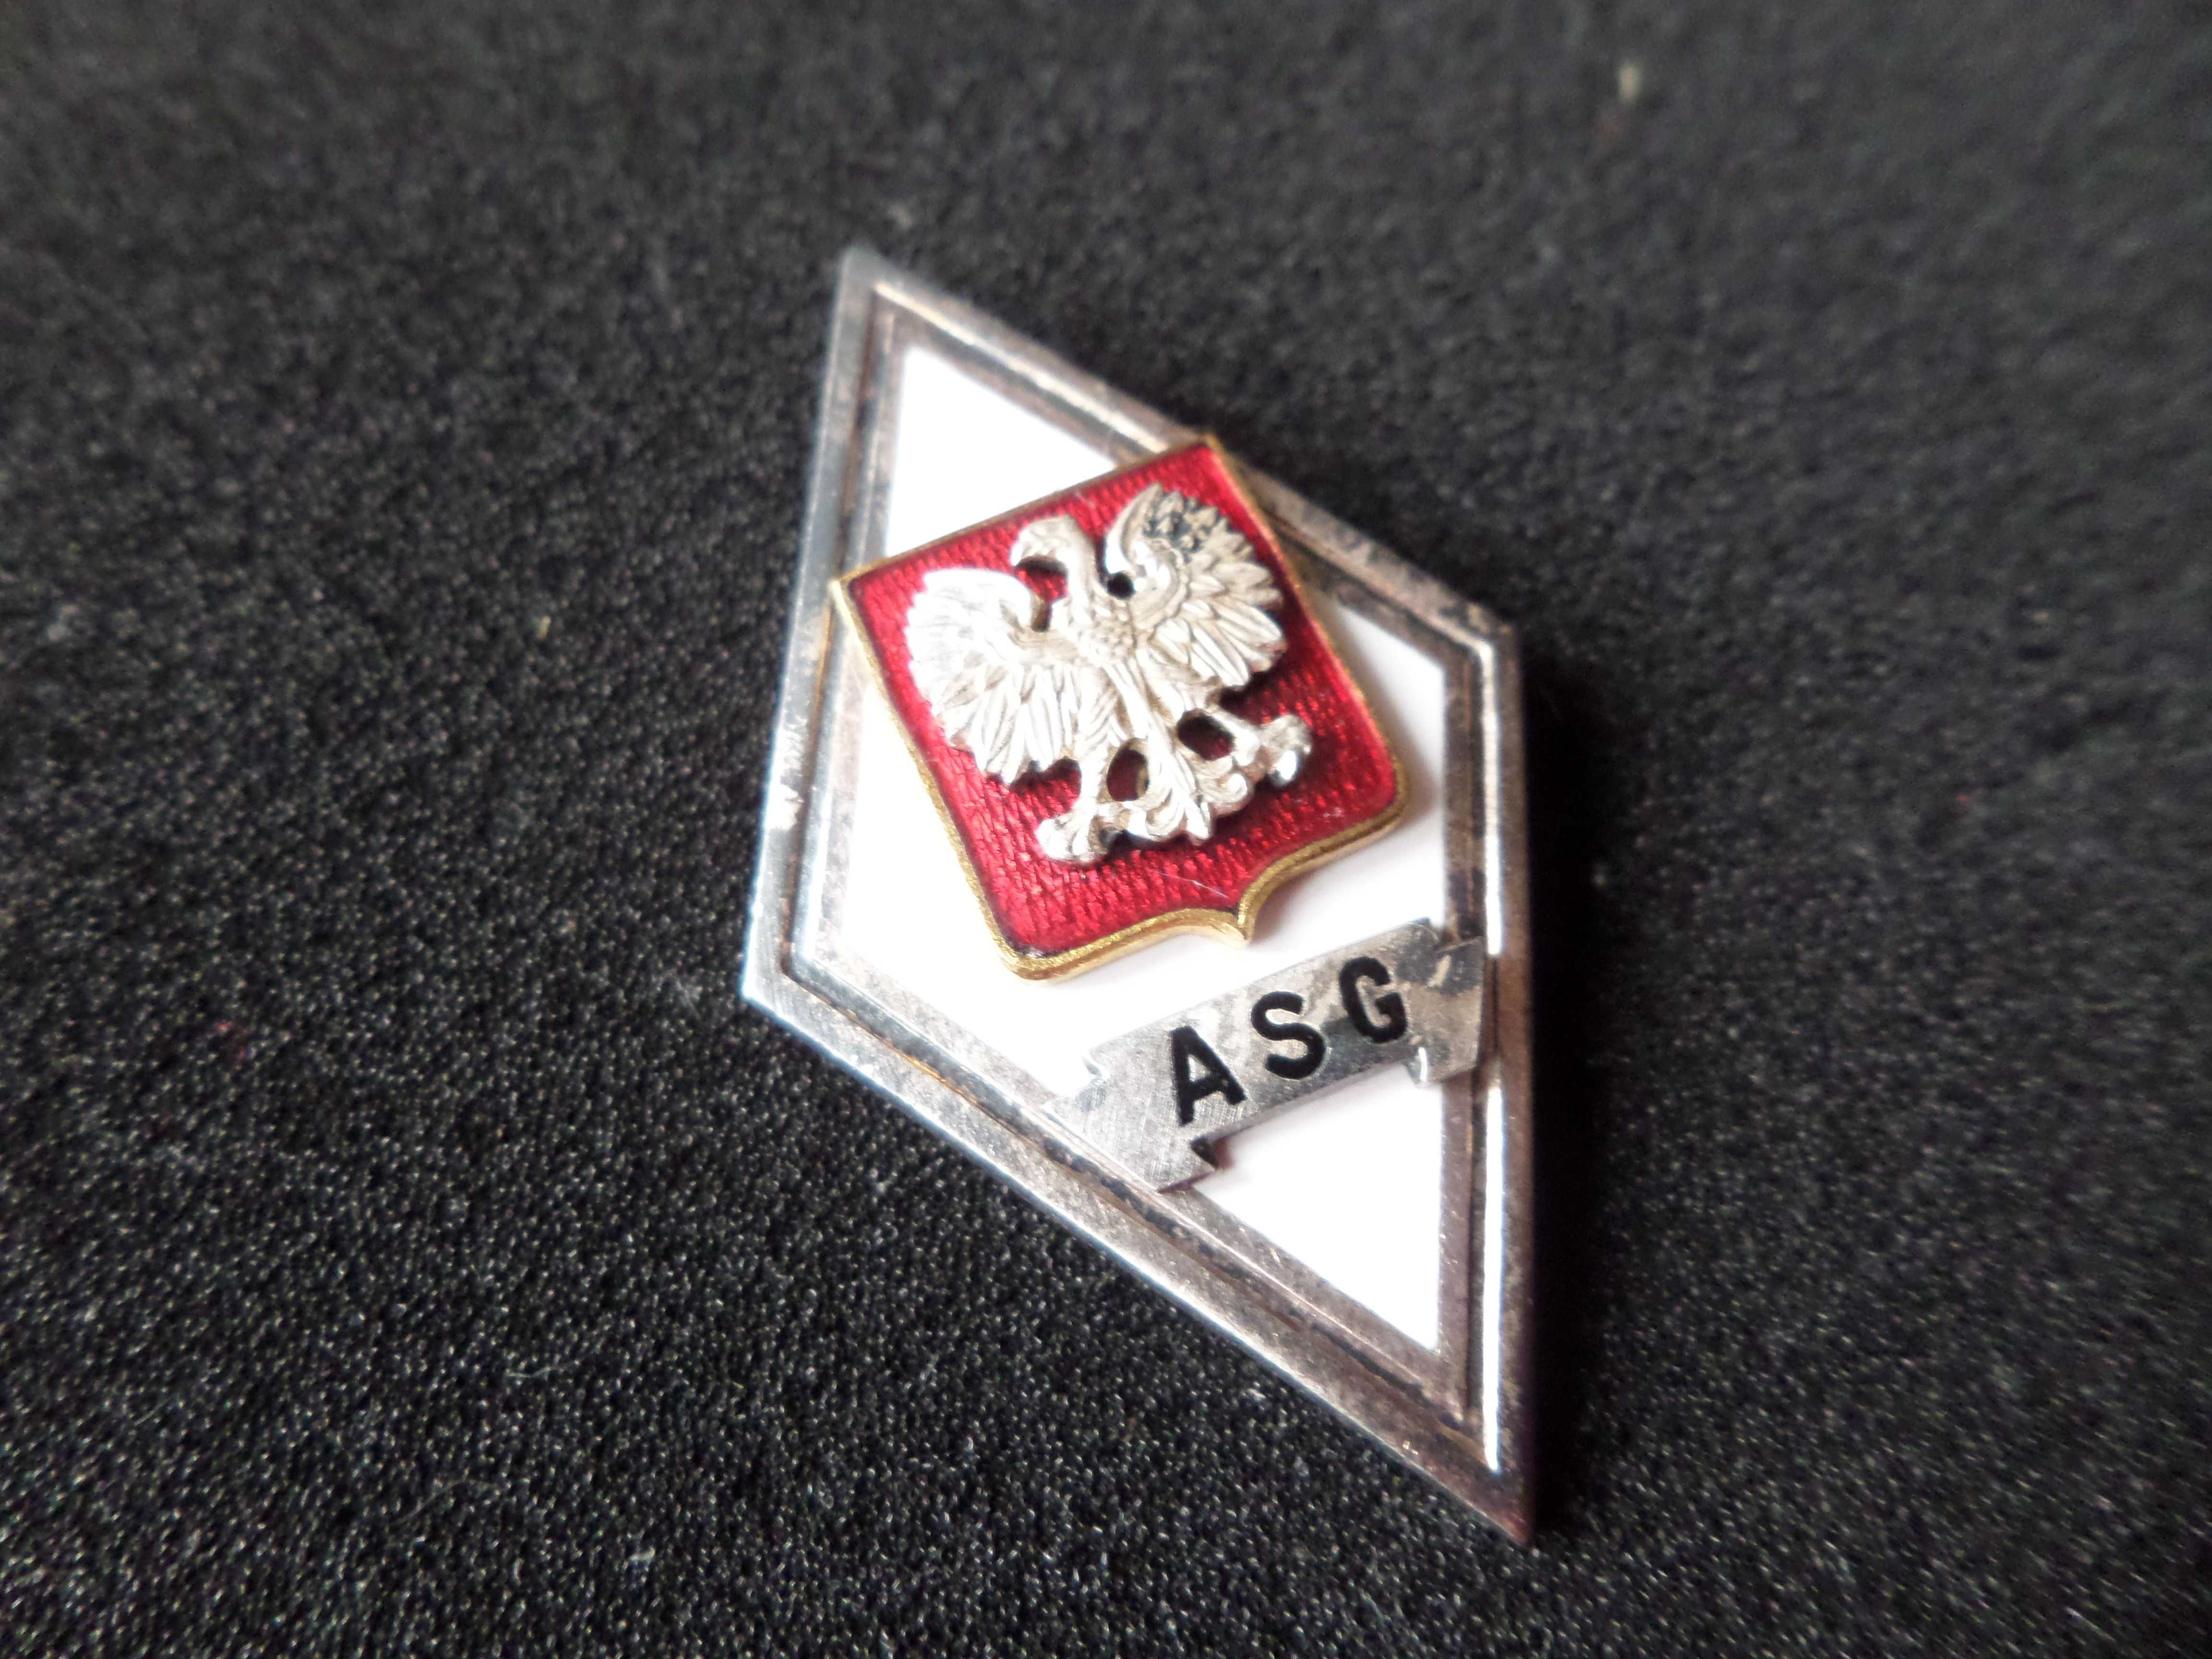 Odznaka ASG - Akademii Sztabu Generalnego WP